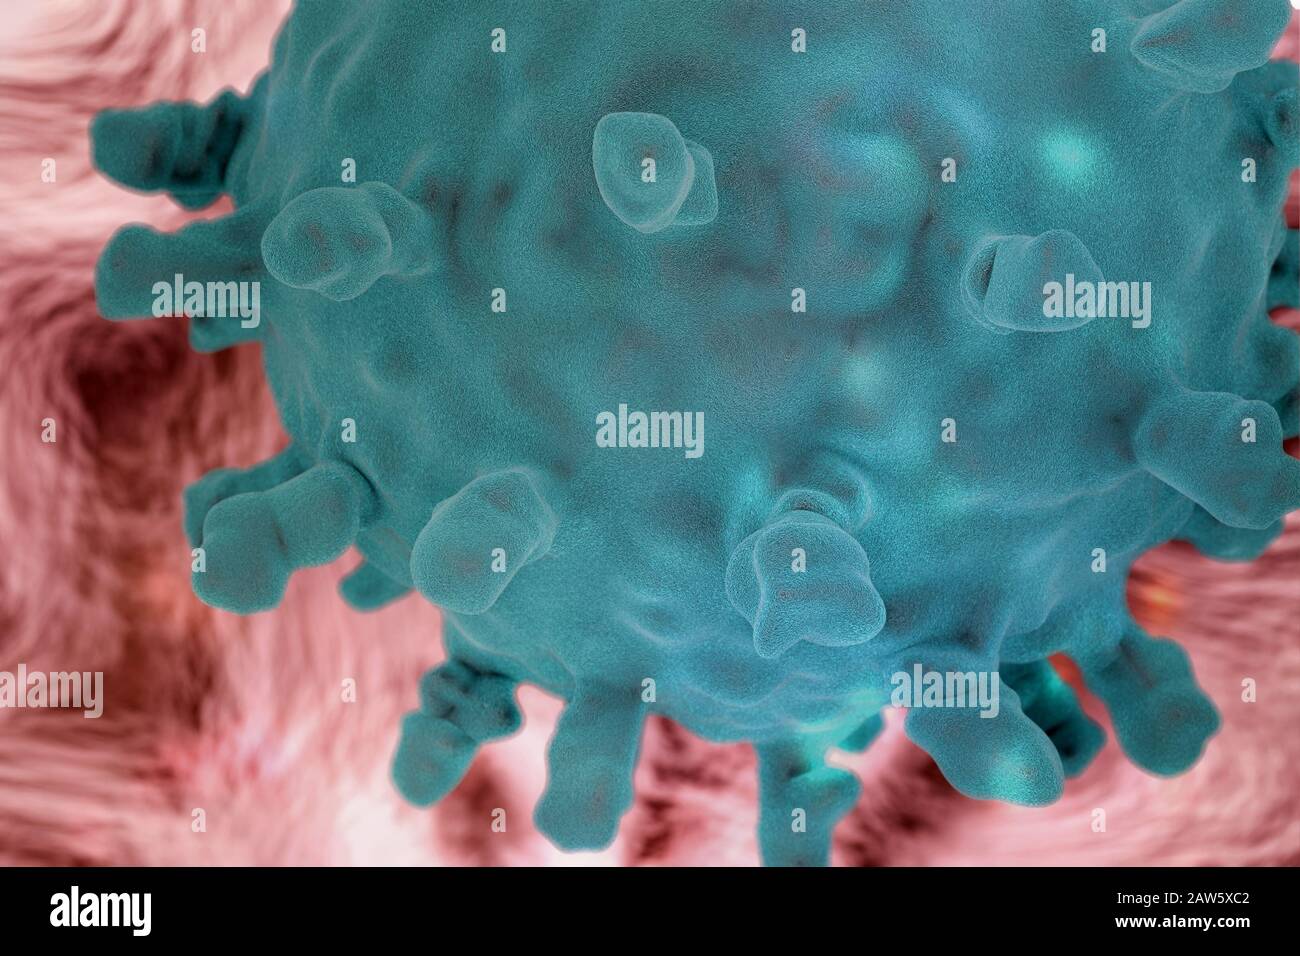 Wissenschaftliche Darstellung des Corona-Virus, 3D-Rendering auf der Grundlage mikroskopischer Bilder des Virus Stockfoto